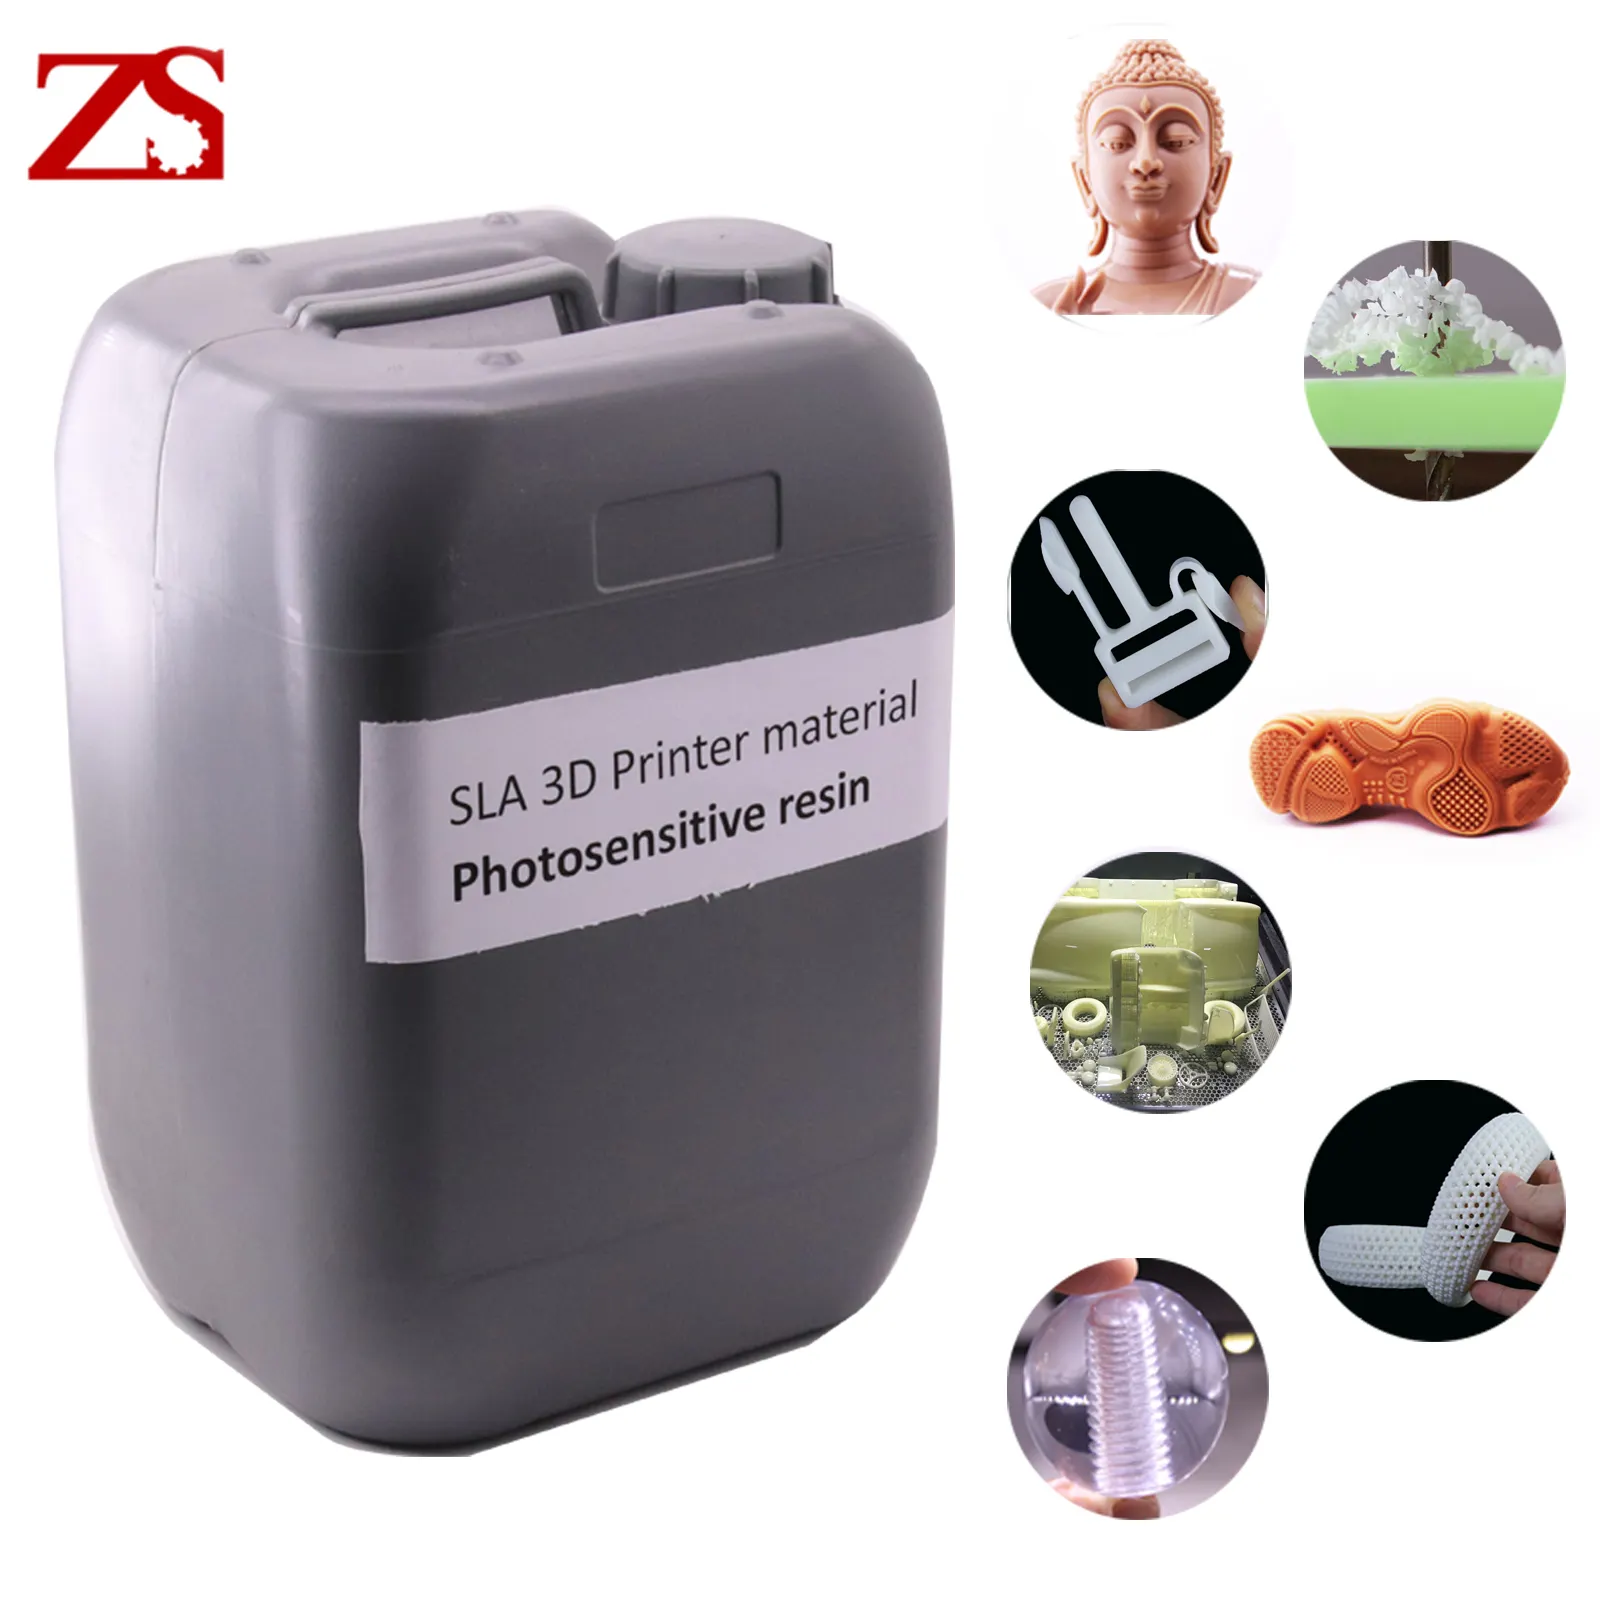 ZS – résine flexible SLA 355 nm, couleur marron, séchage uv, pour modèle d'imprimante 3D